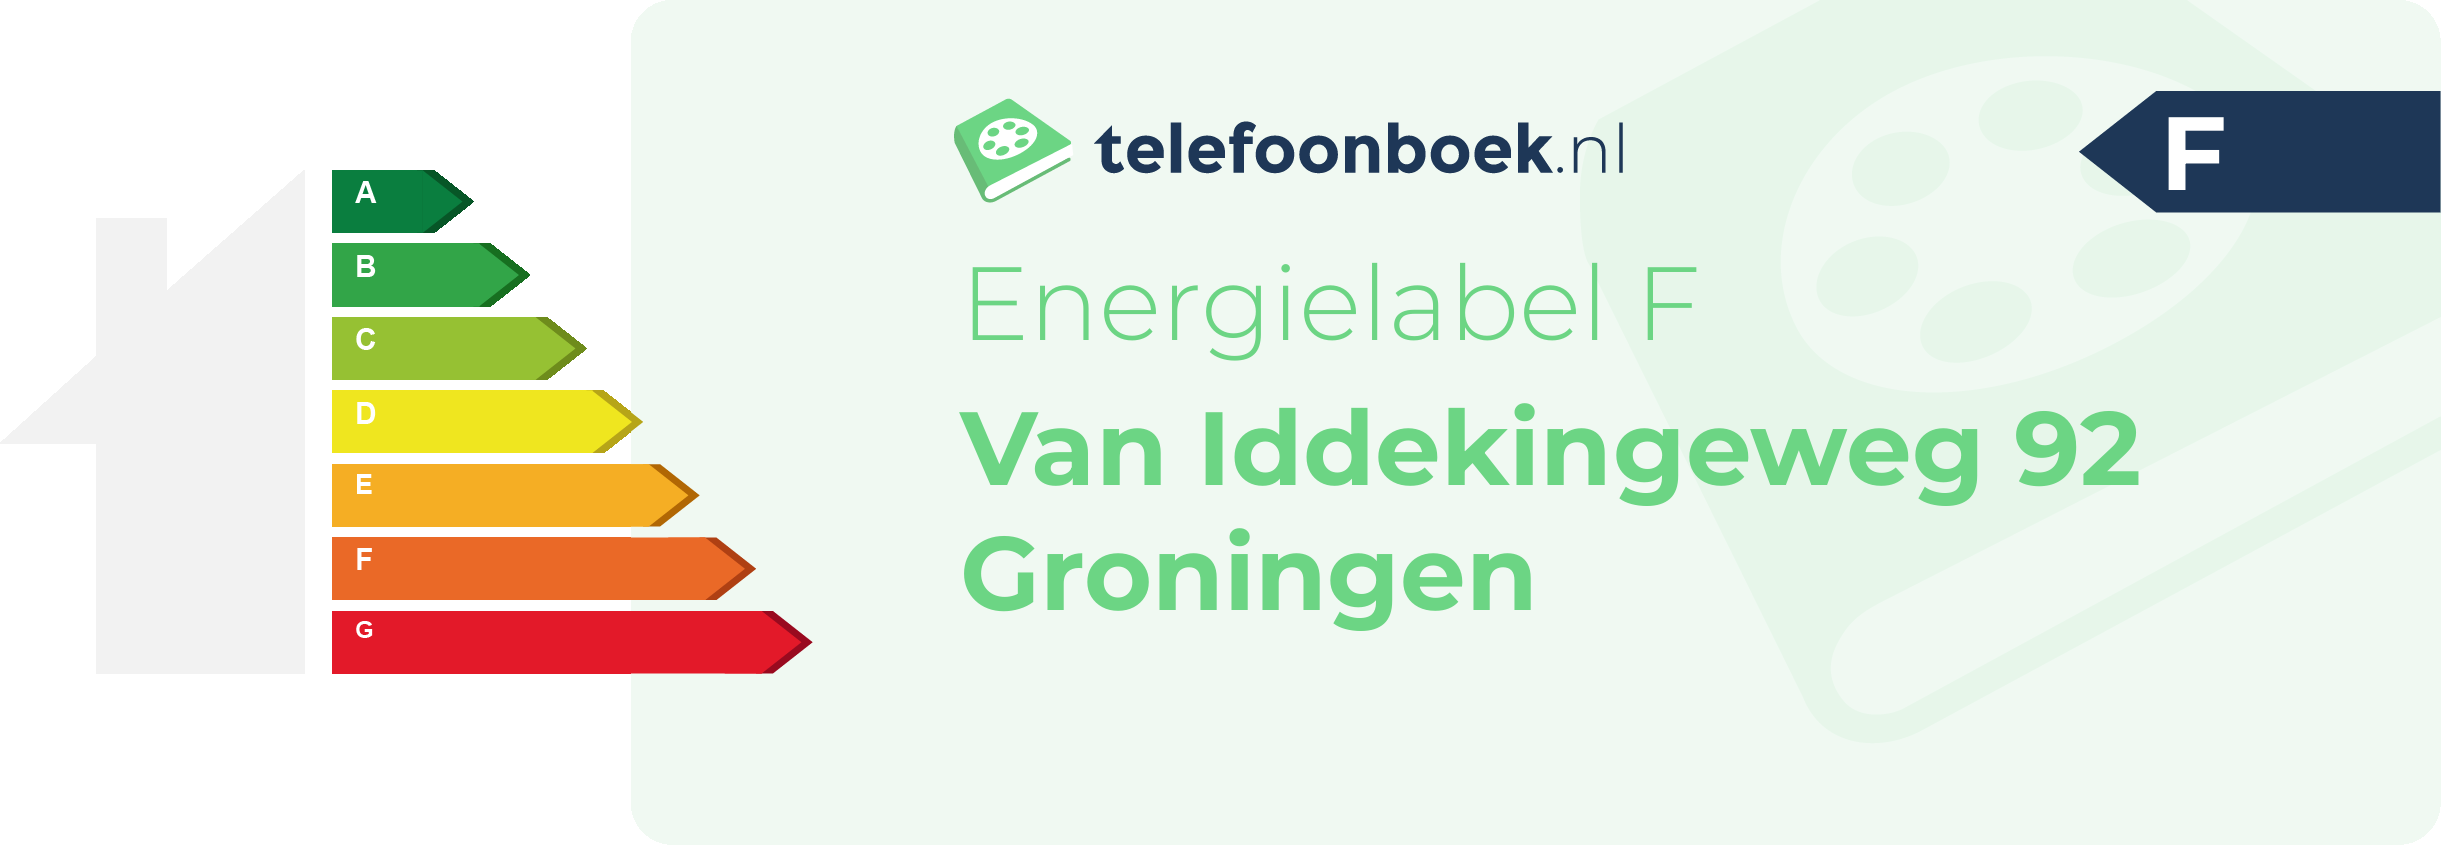 Energielabel Van Iddekingeweg 92 Groningen